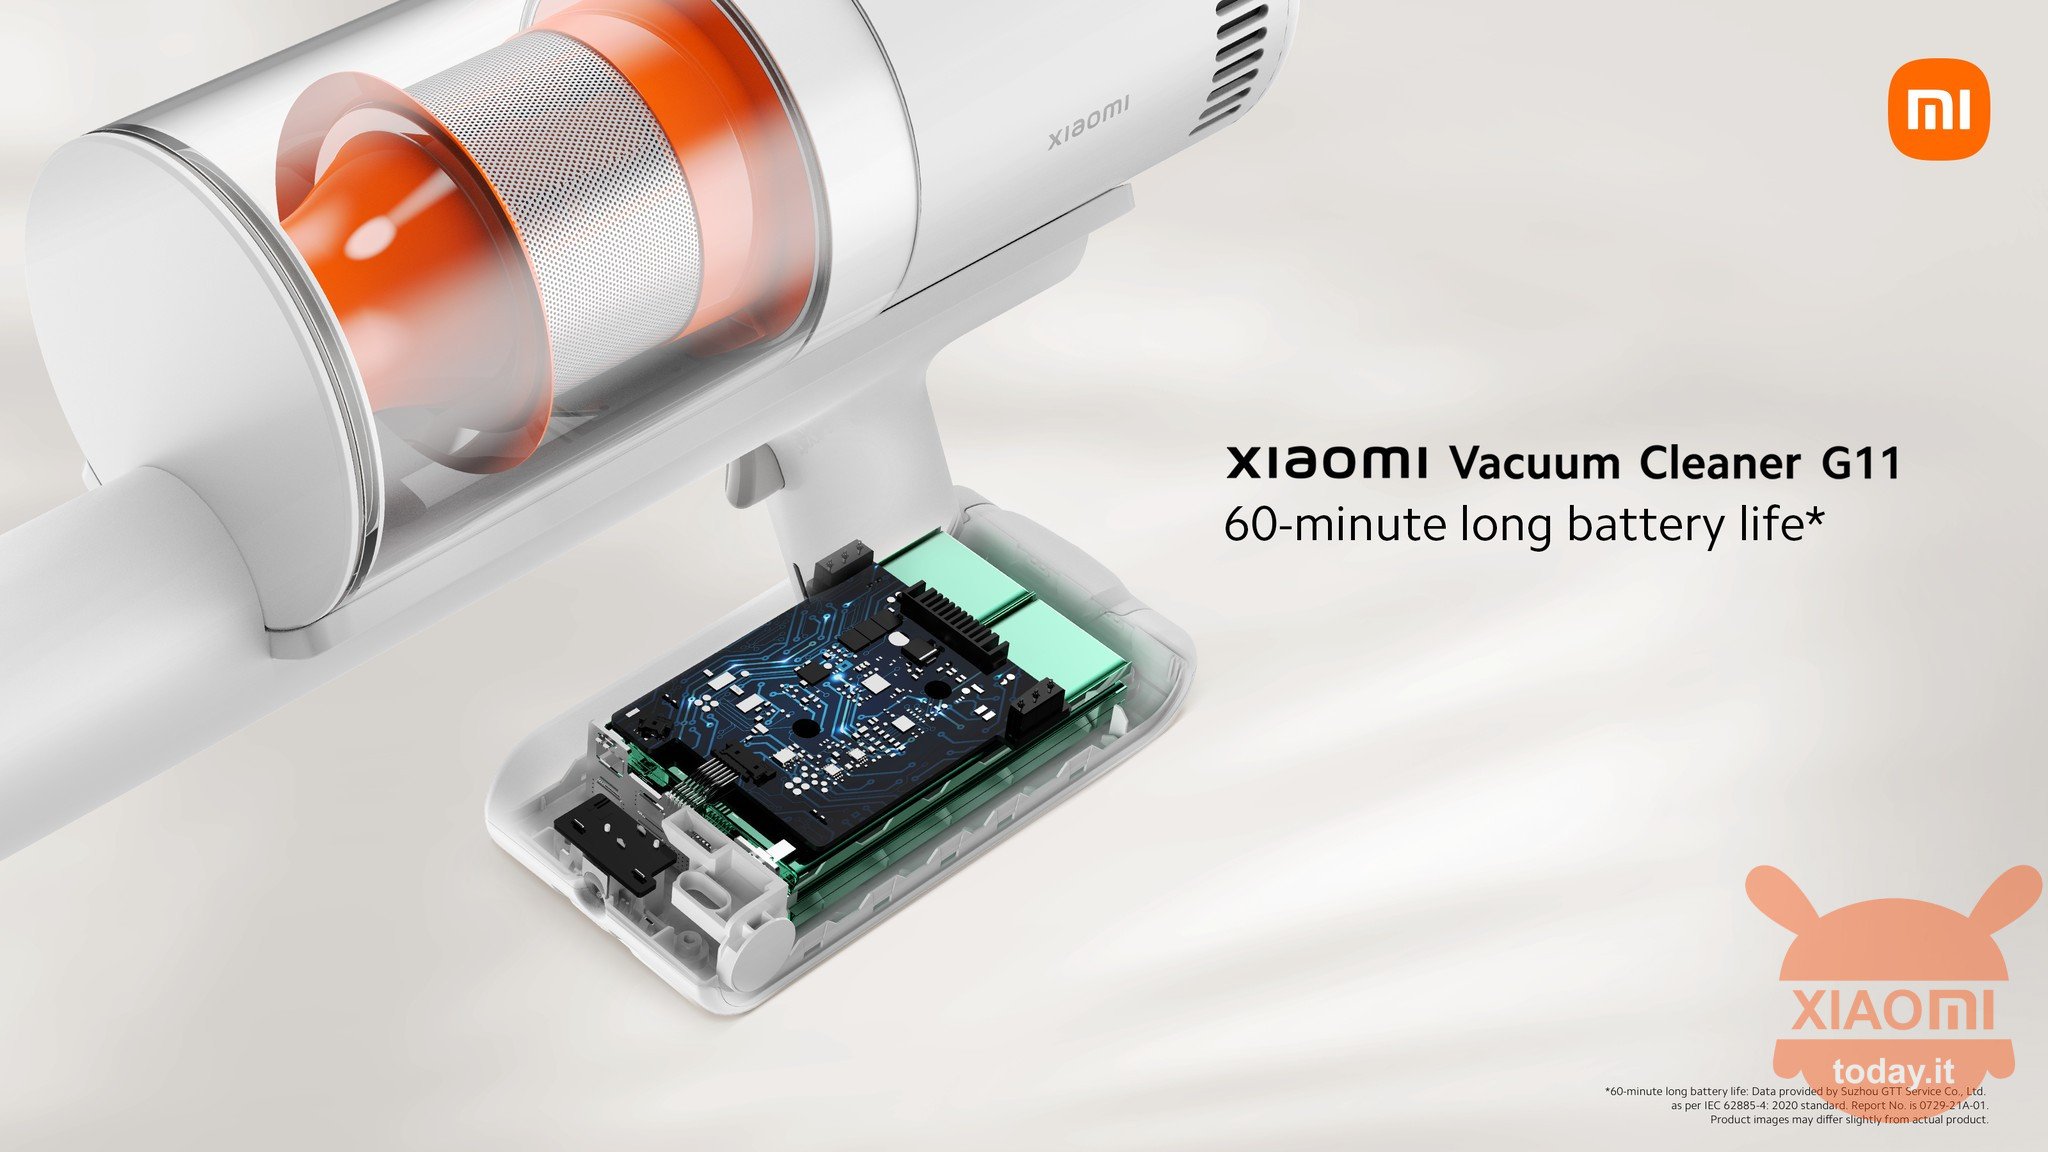 xiaomi vacuum cleaner g11